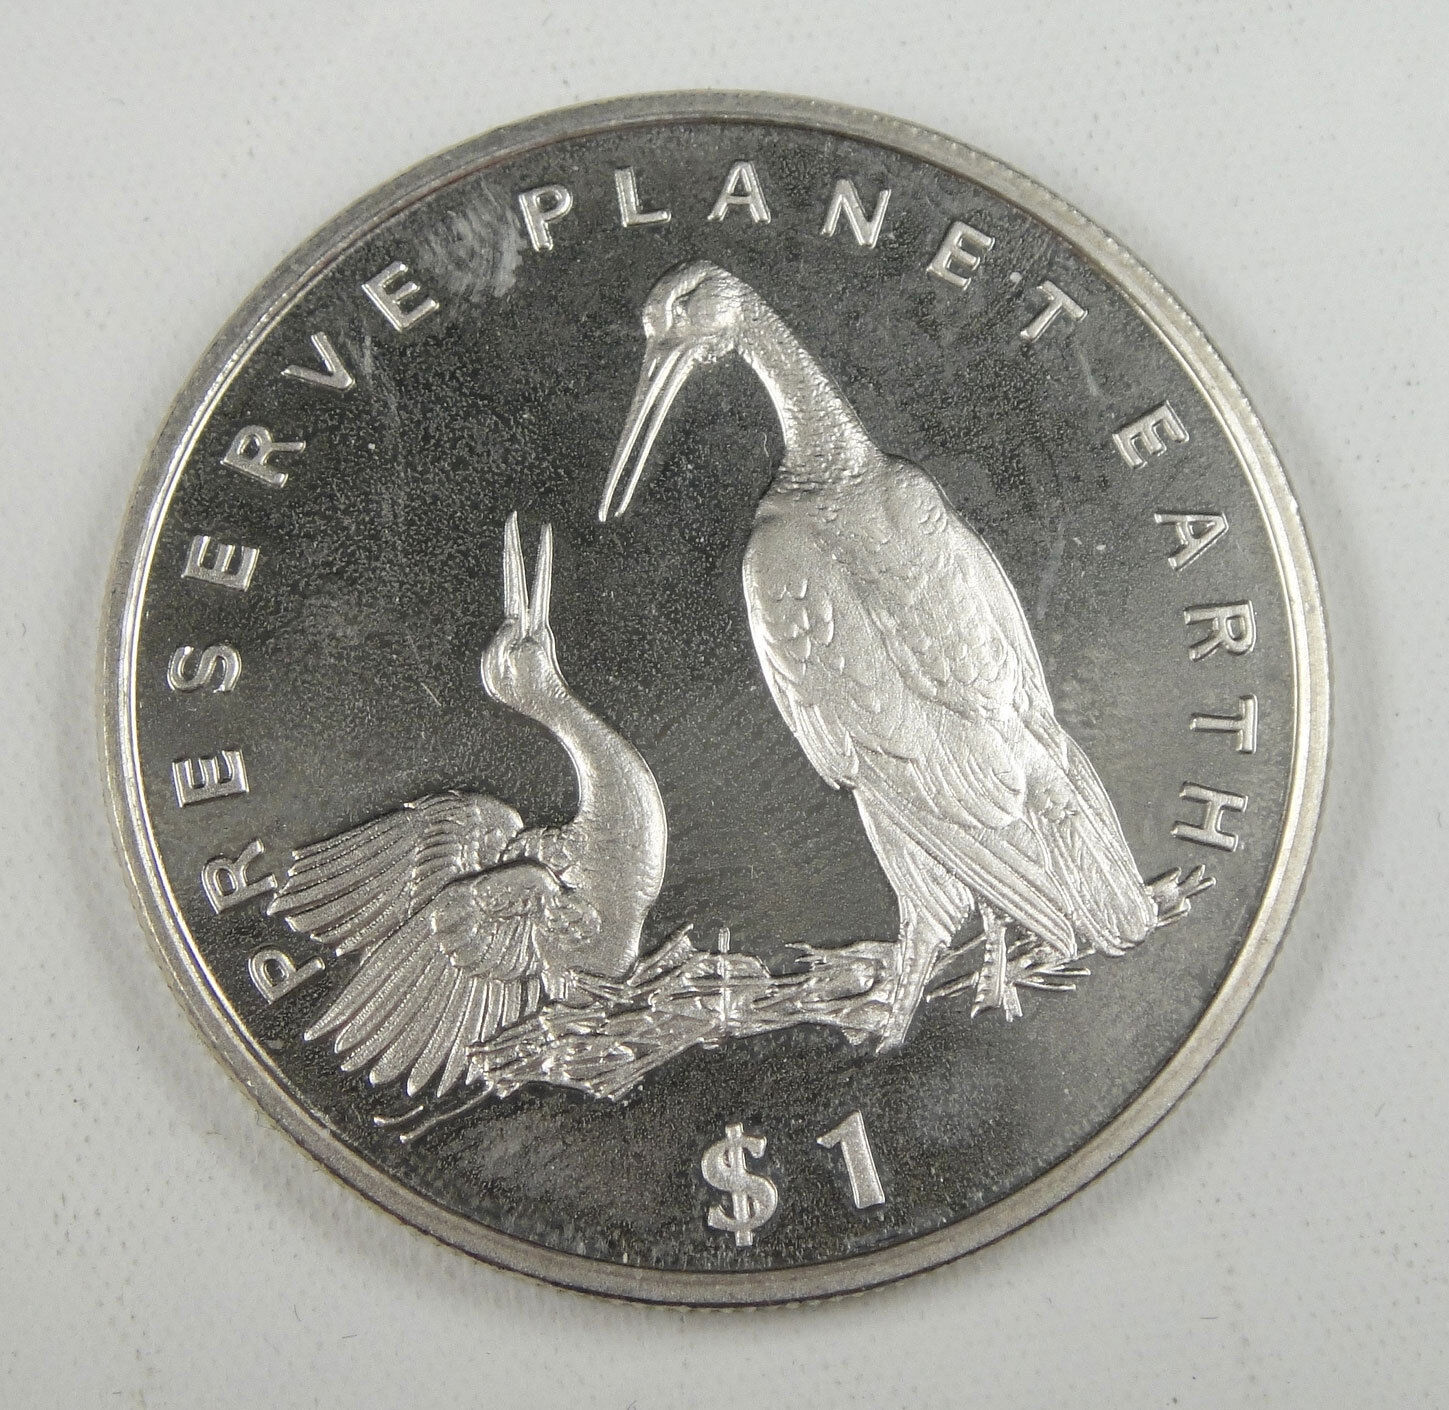 Liberia Commemorative Coin $1 Almost Unc, Preserve Planet Earth, Storks